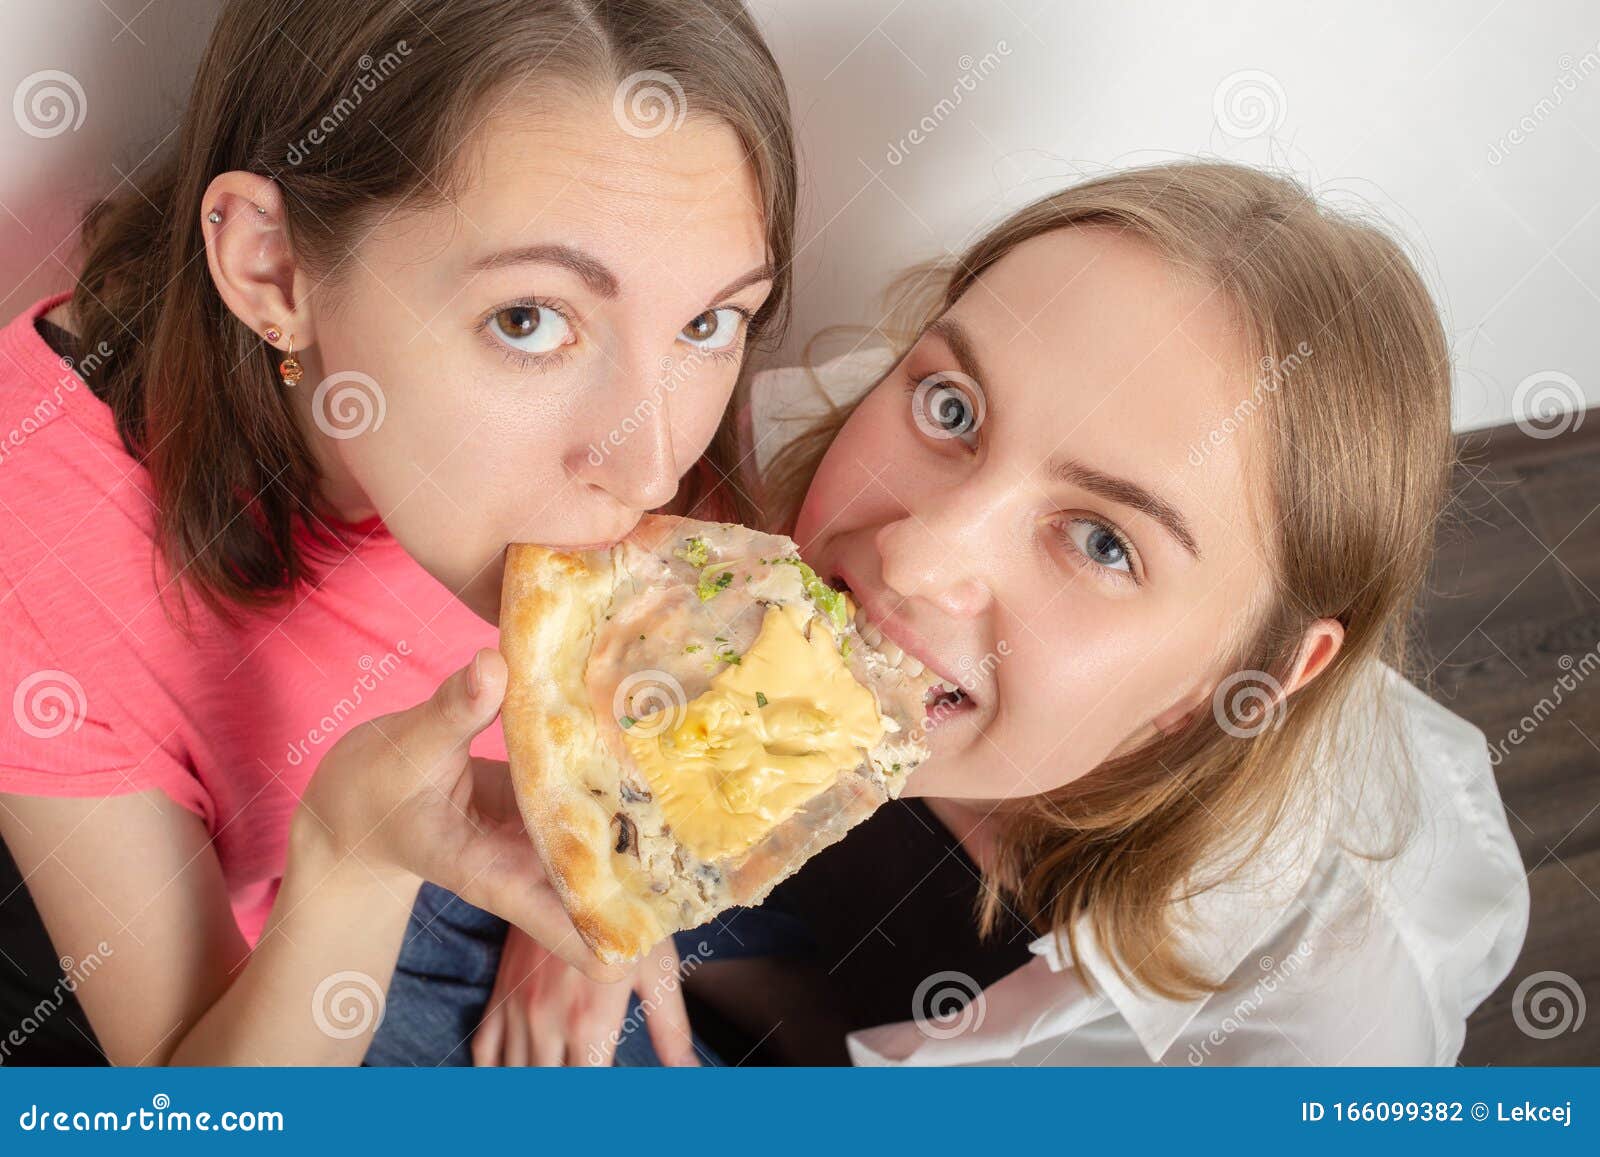 Girls Eats Pizza Stock Photo Image Of Joyful Female 166099382